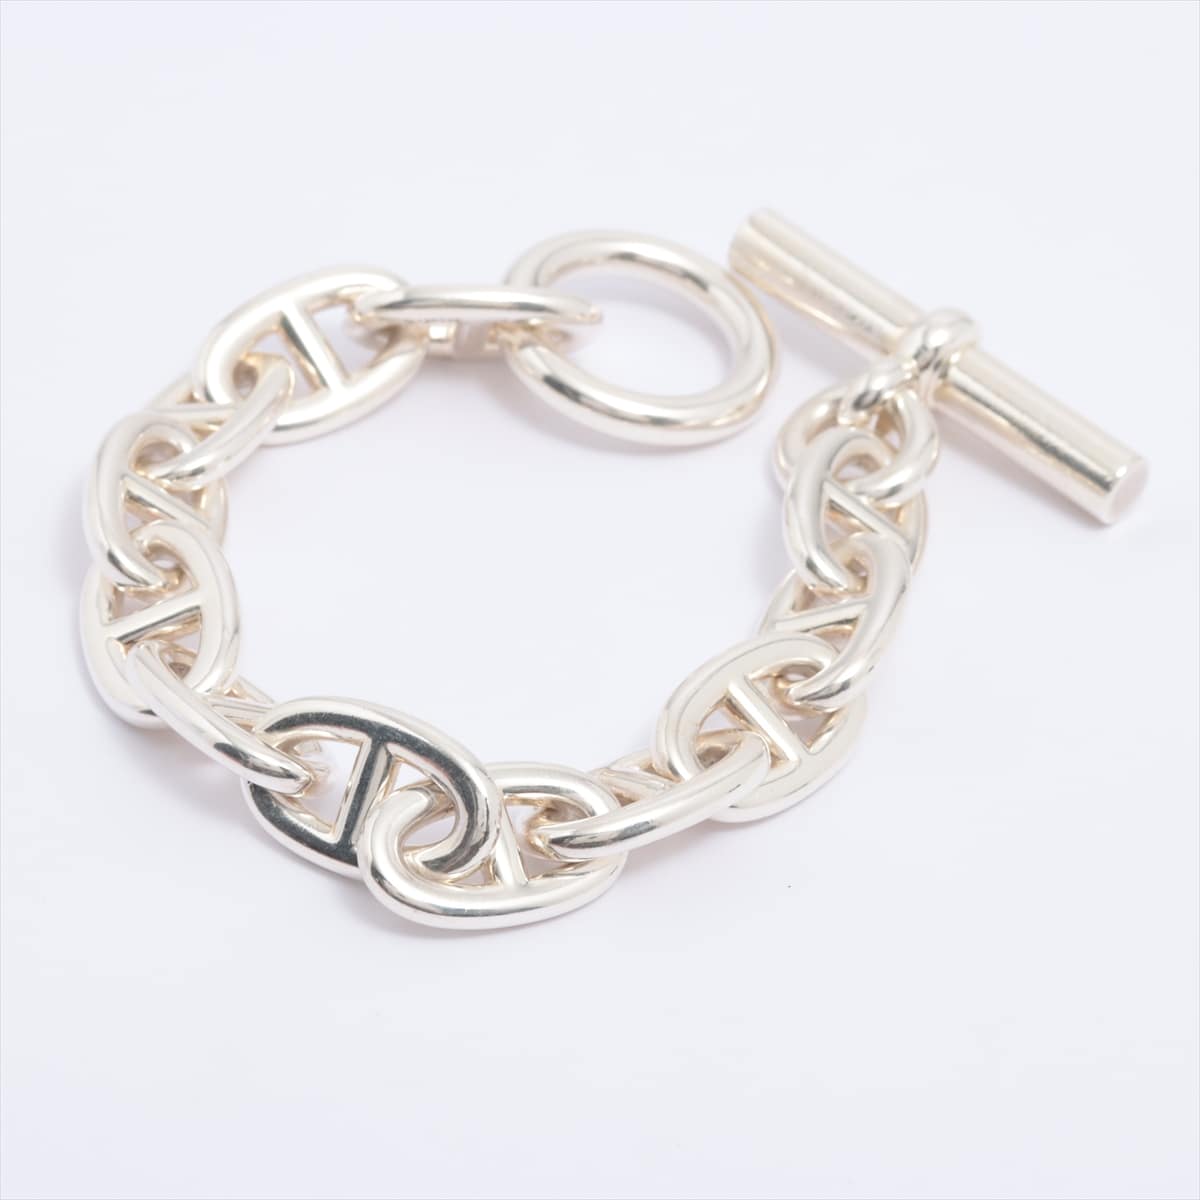 Hermès Chaîne d'Ancre TGM Bracelet 925 107.2g Silver 12 frames